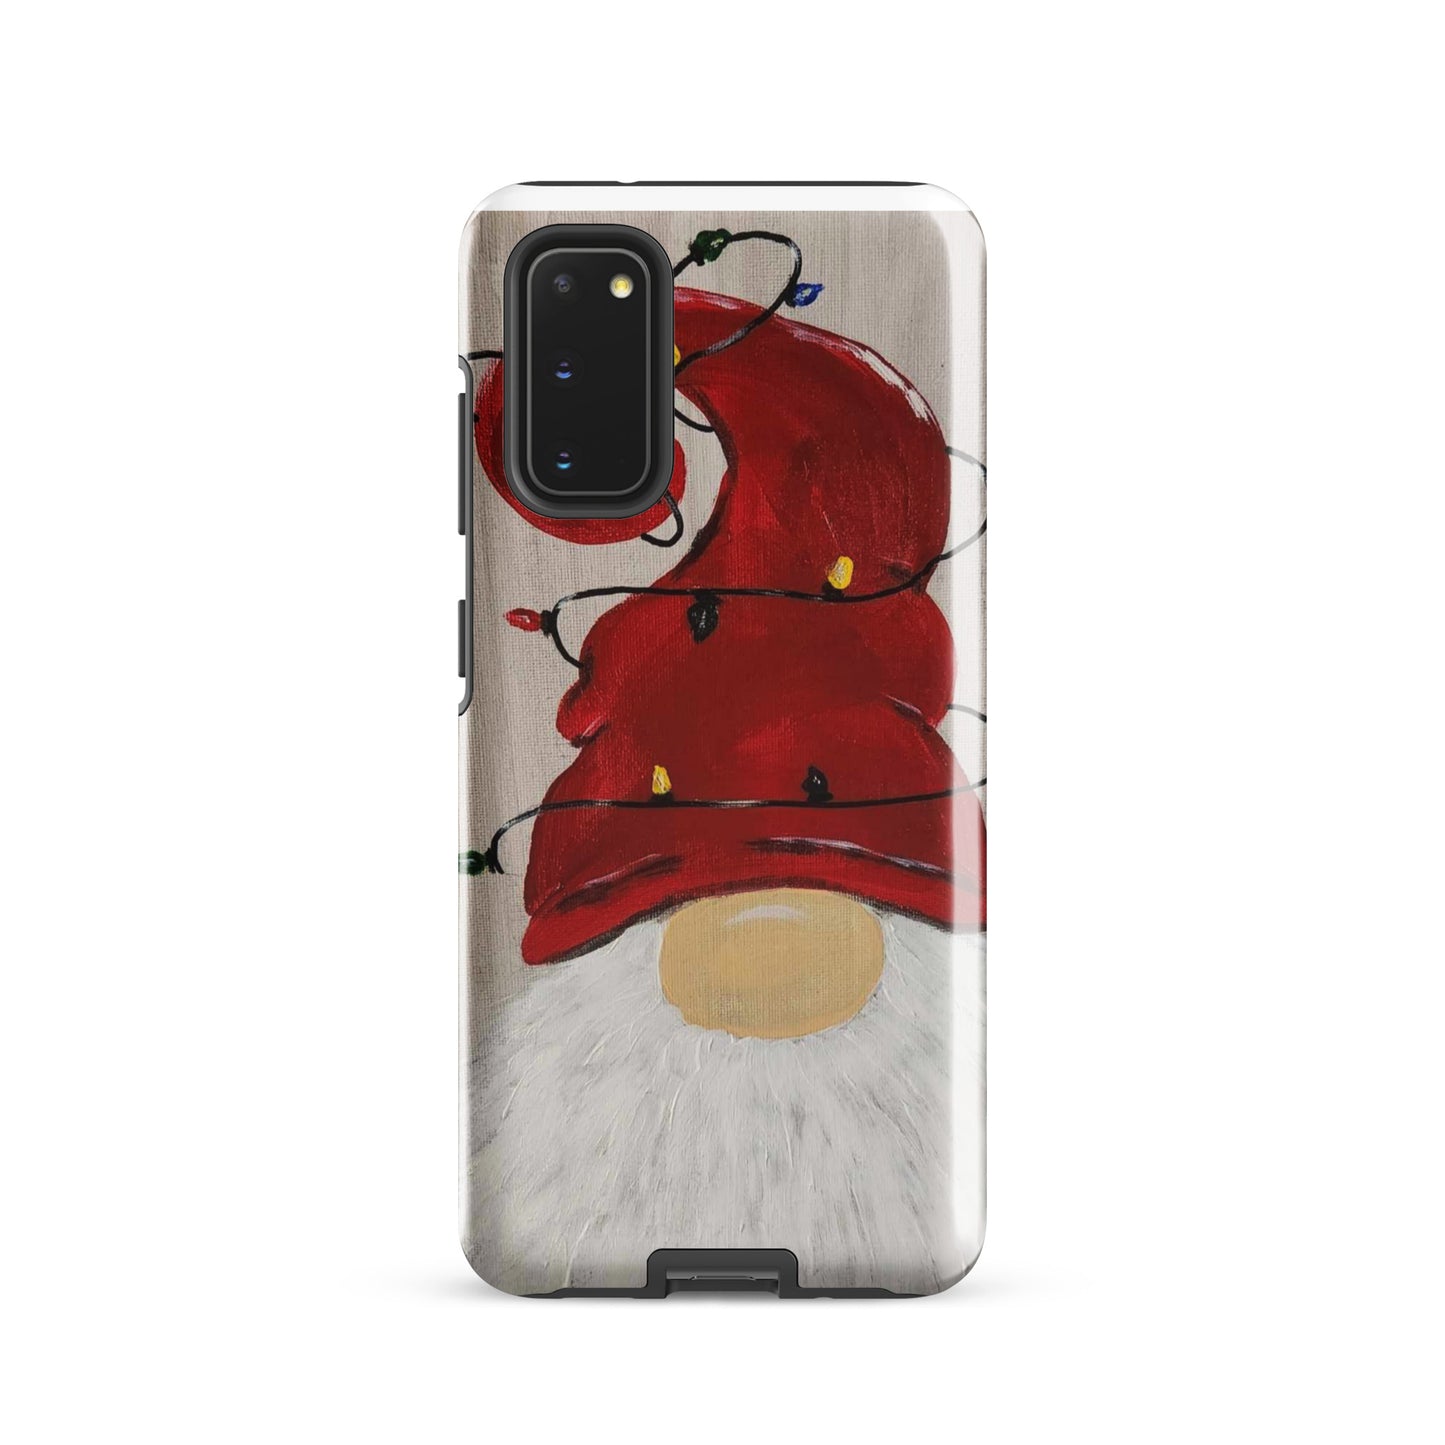 Jens Gnome Christmas - Tough case for Samsung®